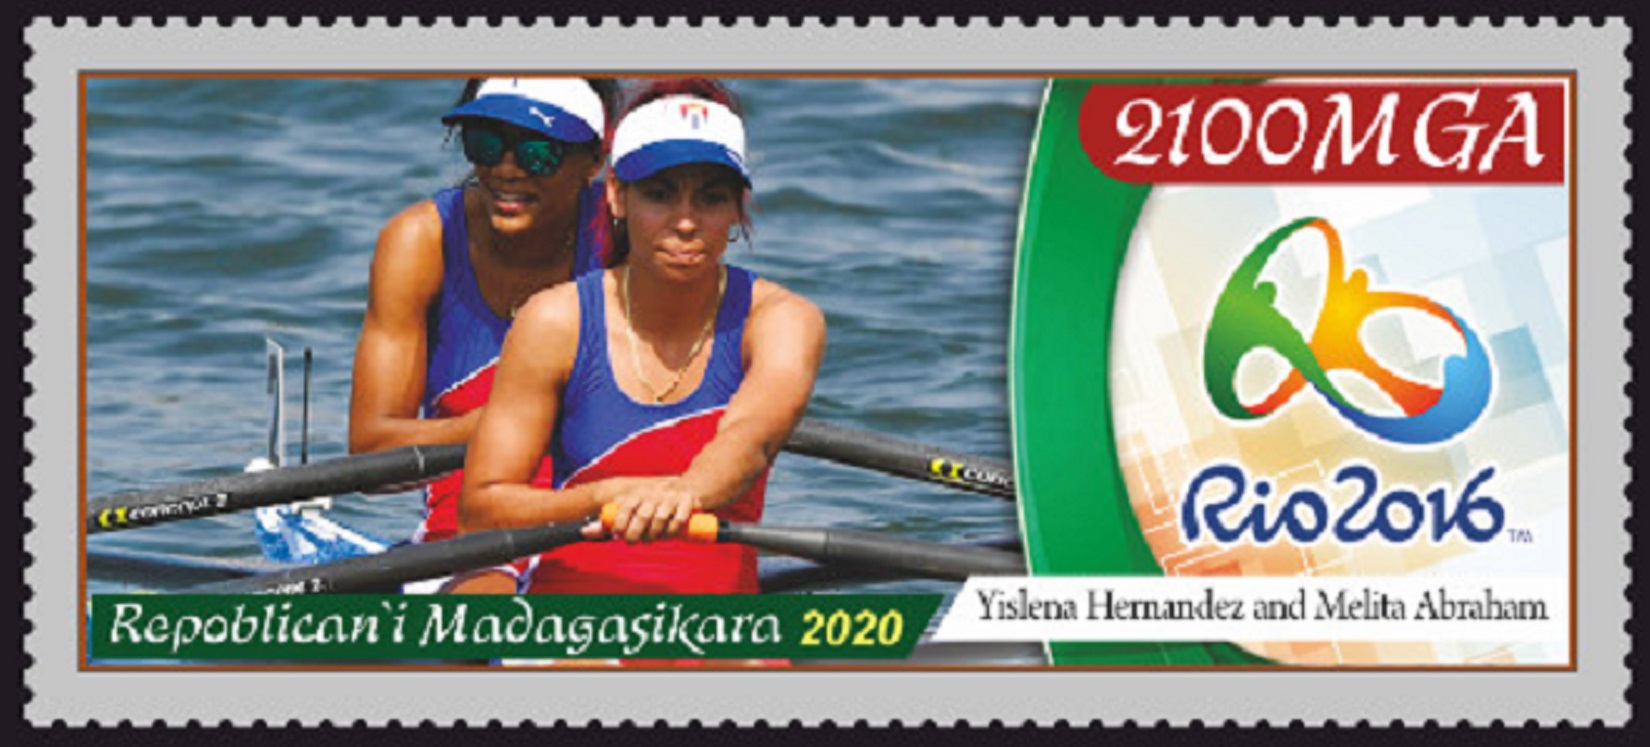 Stamp MAD 2020 OG Rio de Janeiro Yislena Hernandez Melita Abraham CHI LW2X 17th place